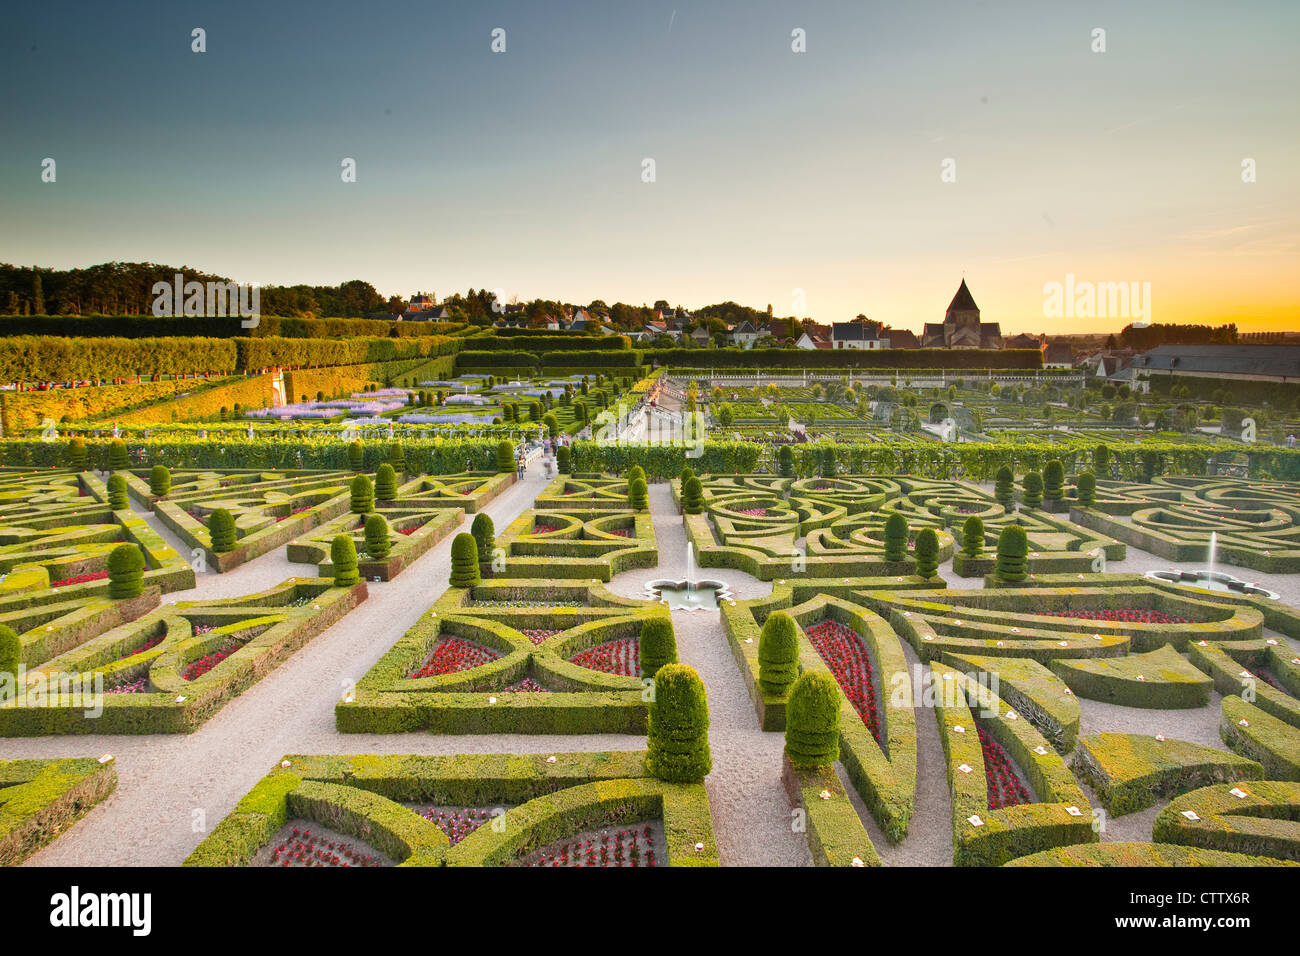 Les beaux jardins du château de Villandry, dans la vallée de la Loire de France. Banque D'Images